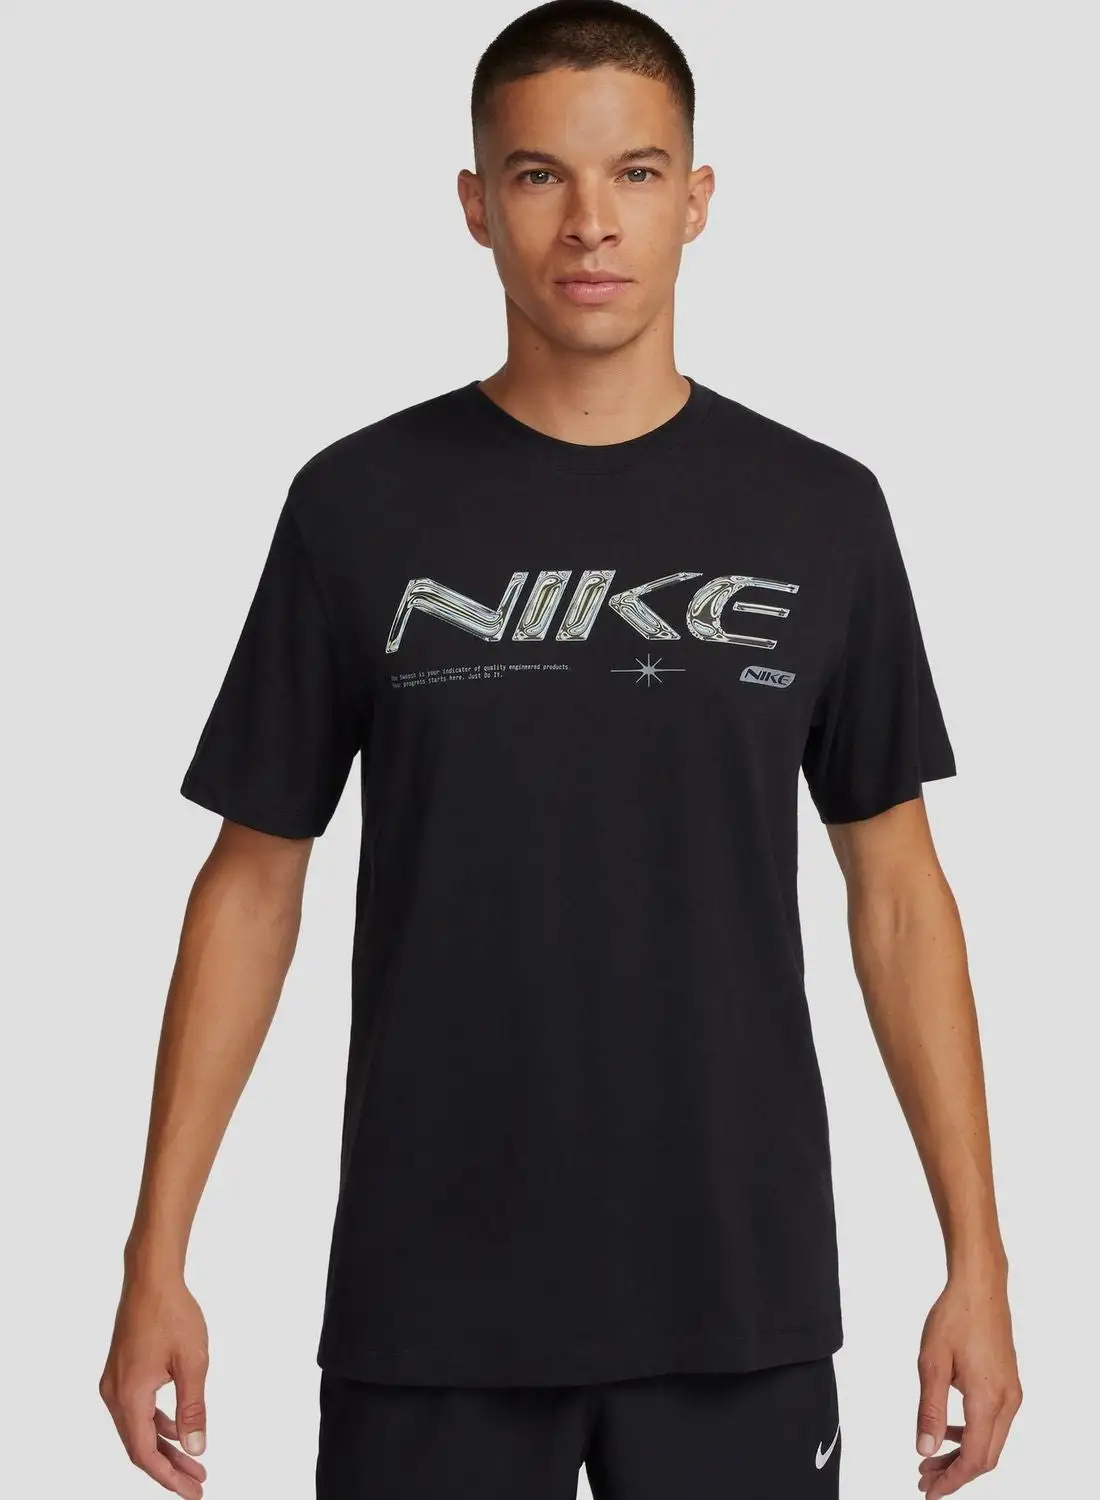 Nike Dri-Fit Wc 2 T-Shirt